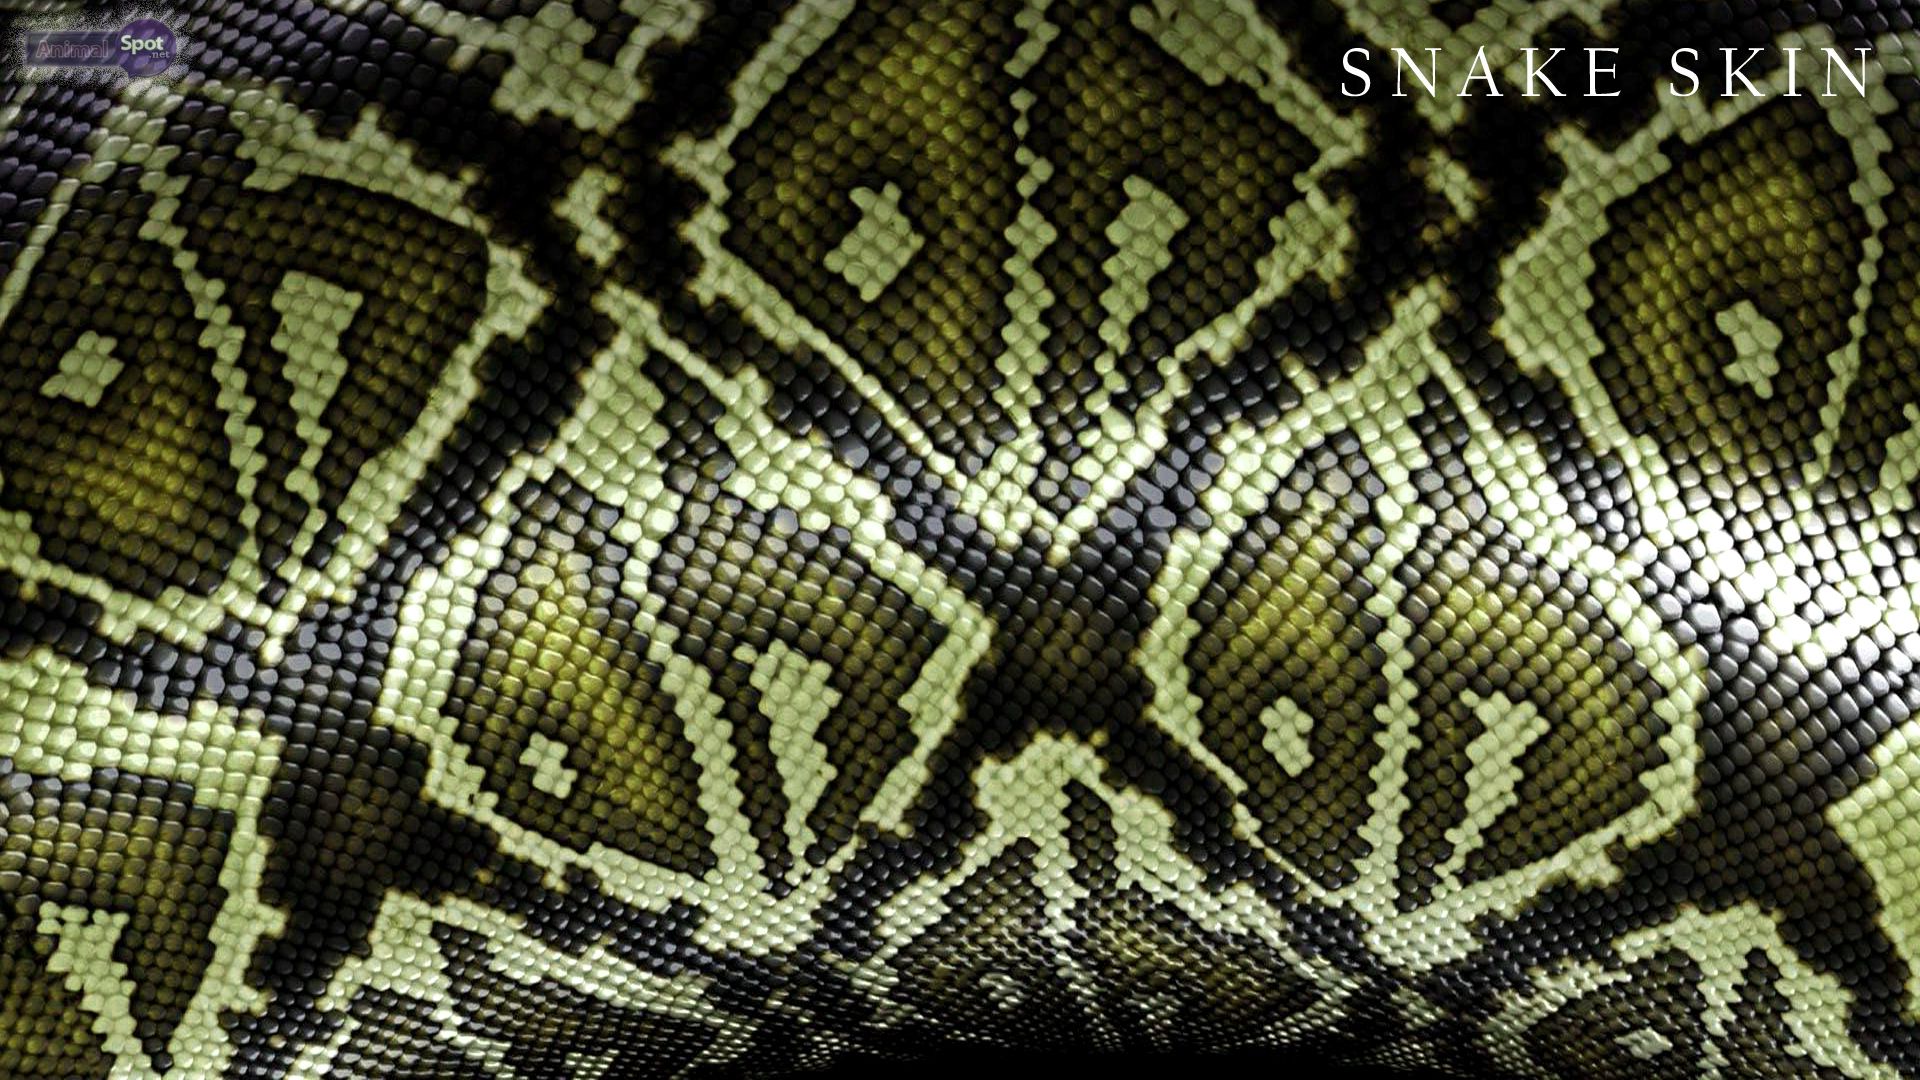 Snakeskin Wallpaper. Snakeskin Wallpaper